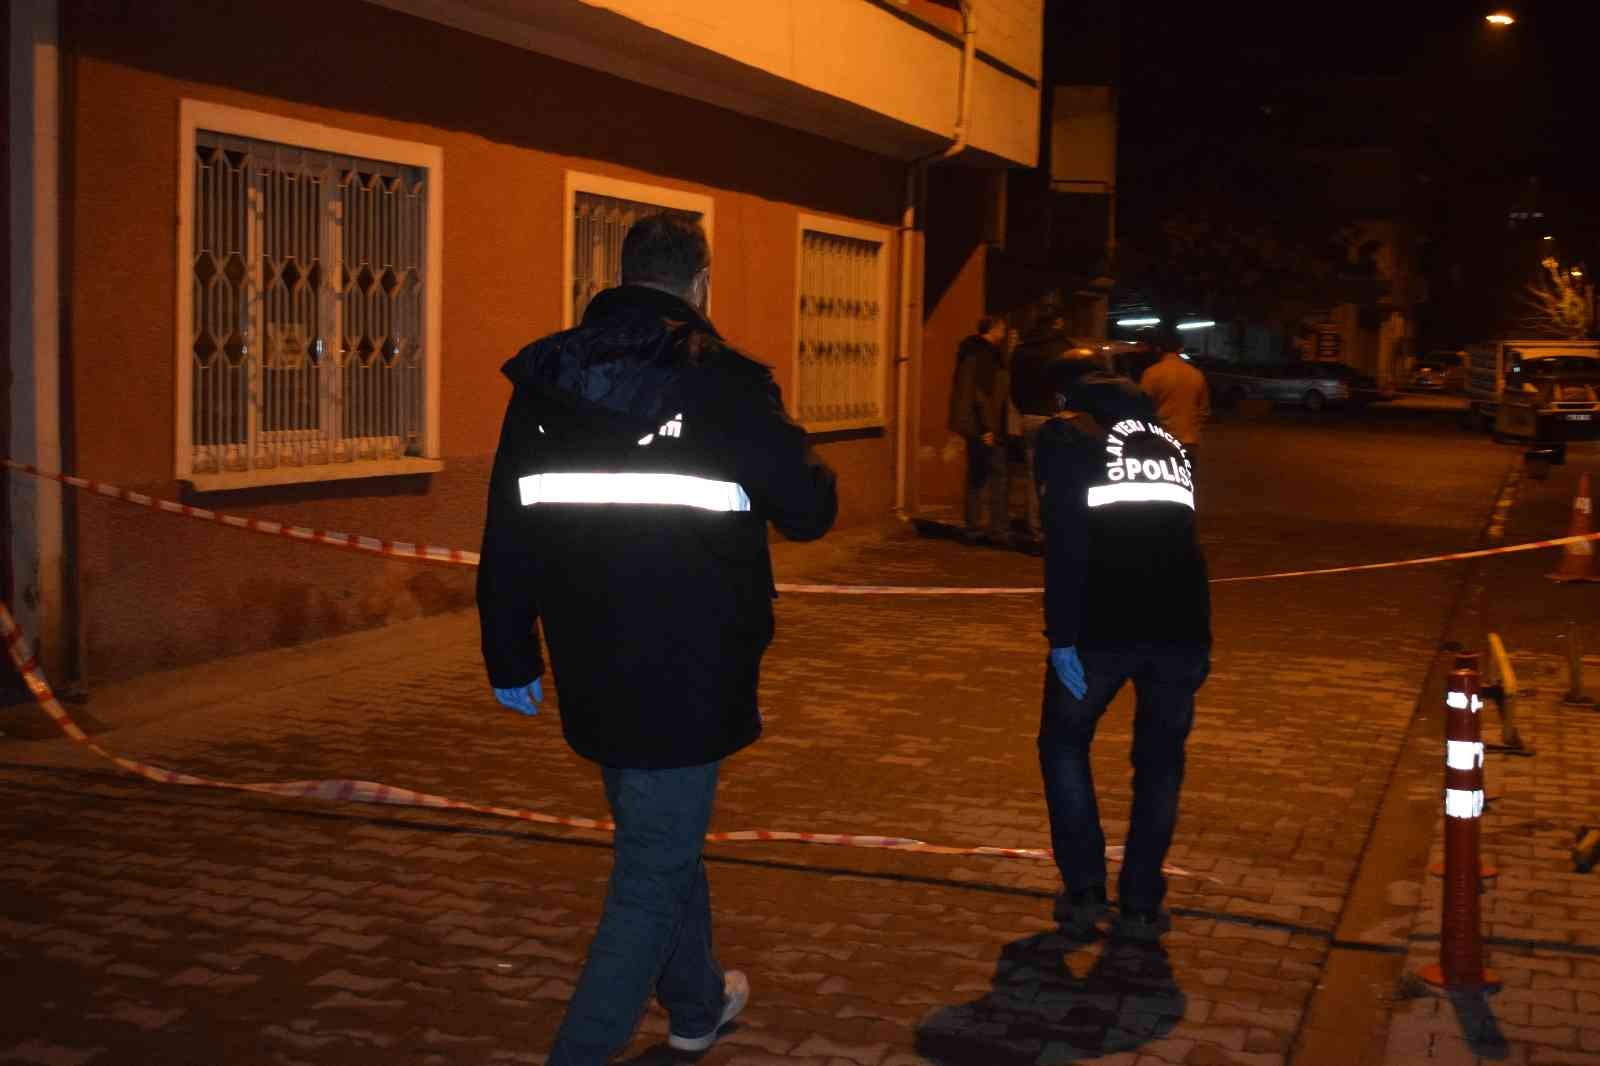 Malatya’daki silahlı kavgayla ilgili 2 kişi tutuklandı #malatya